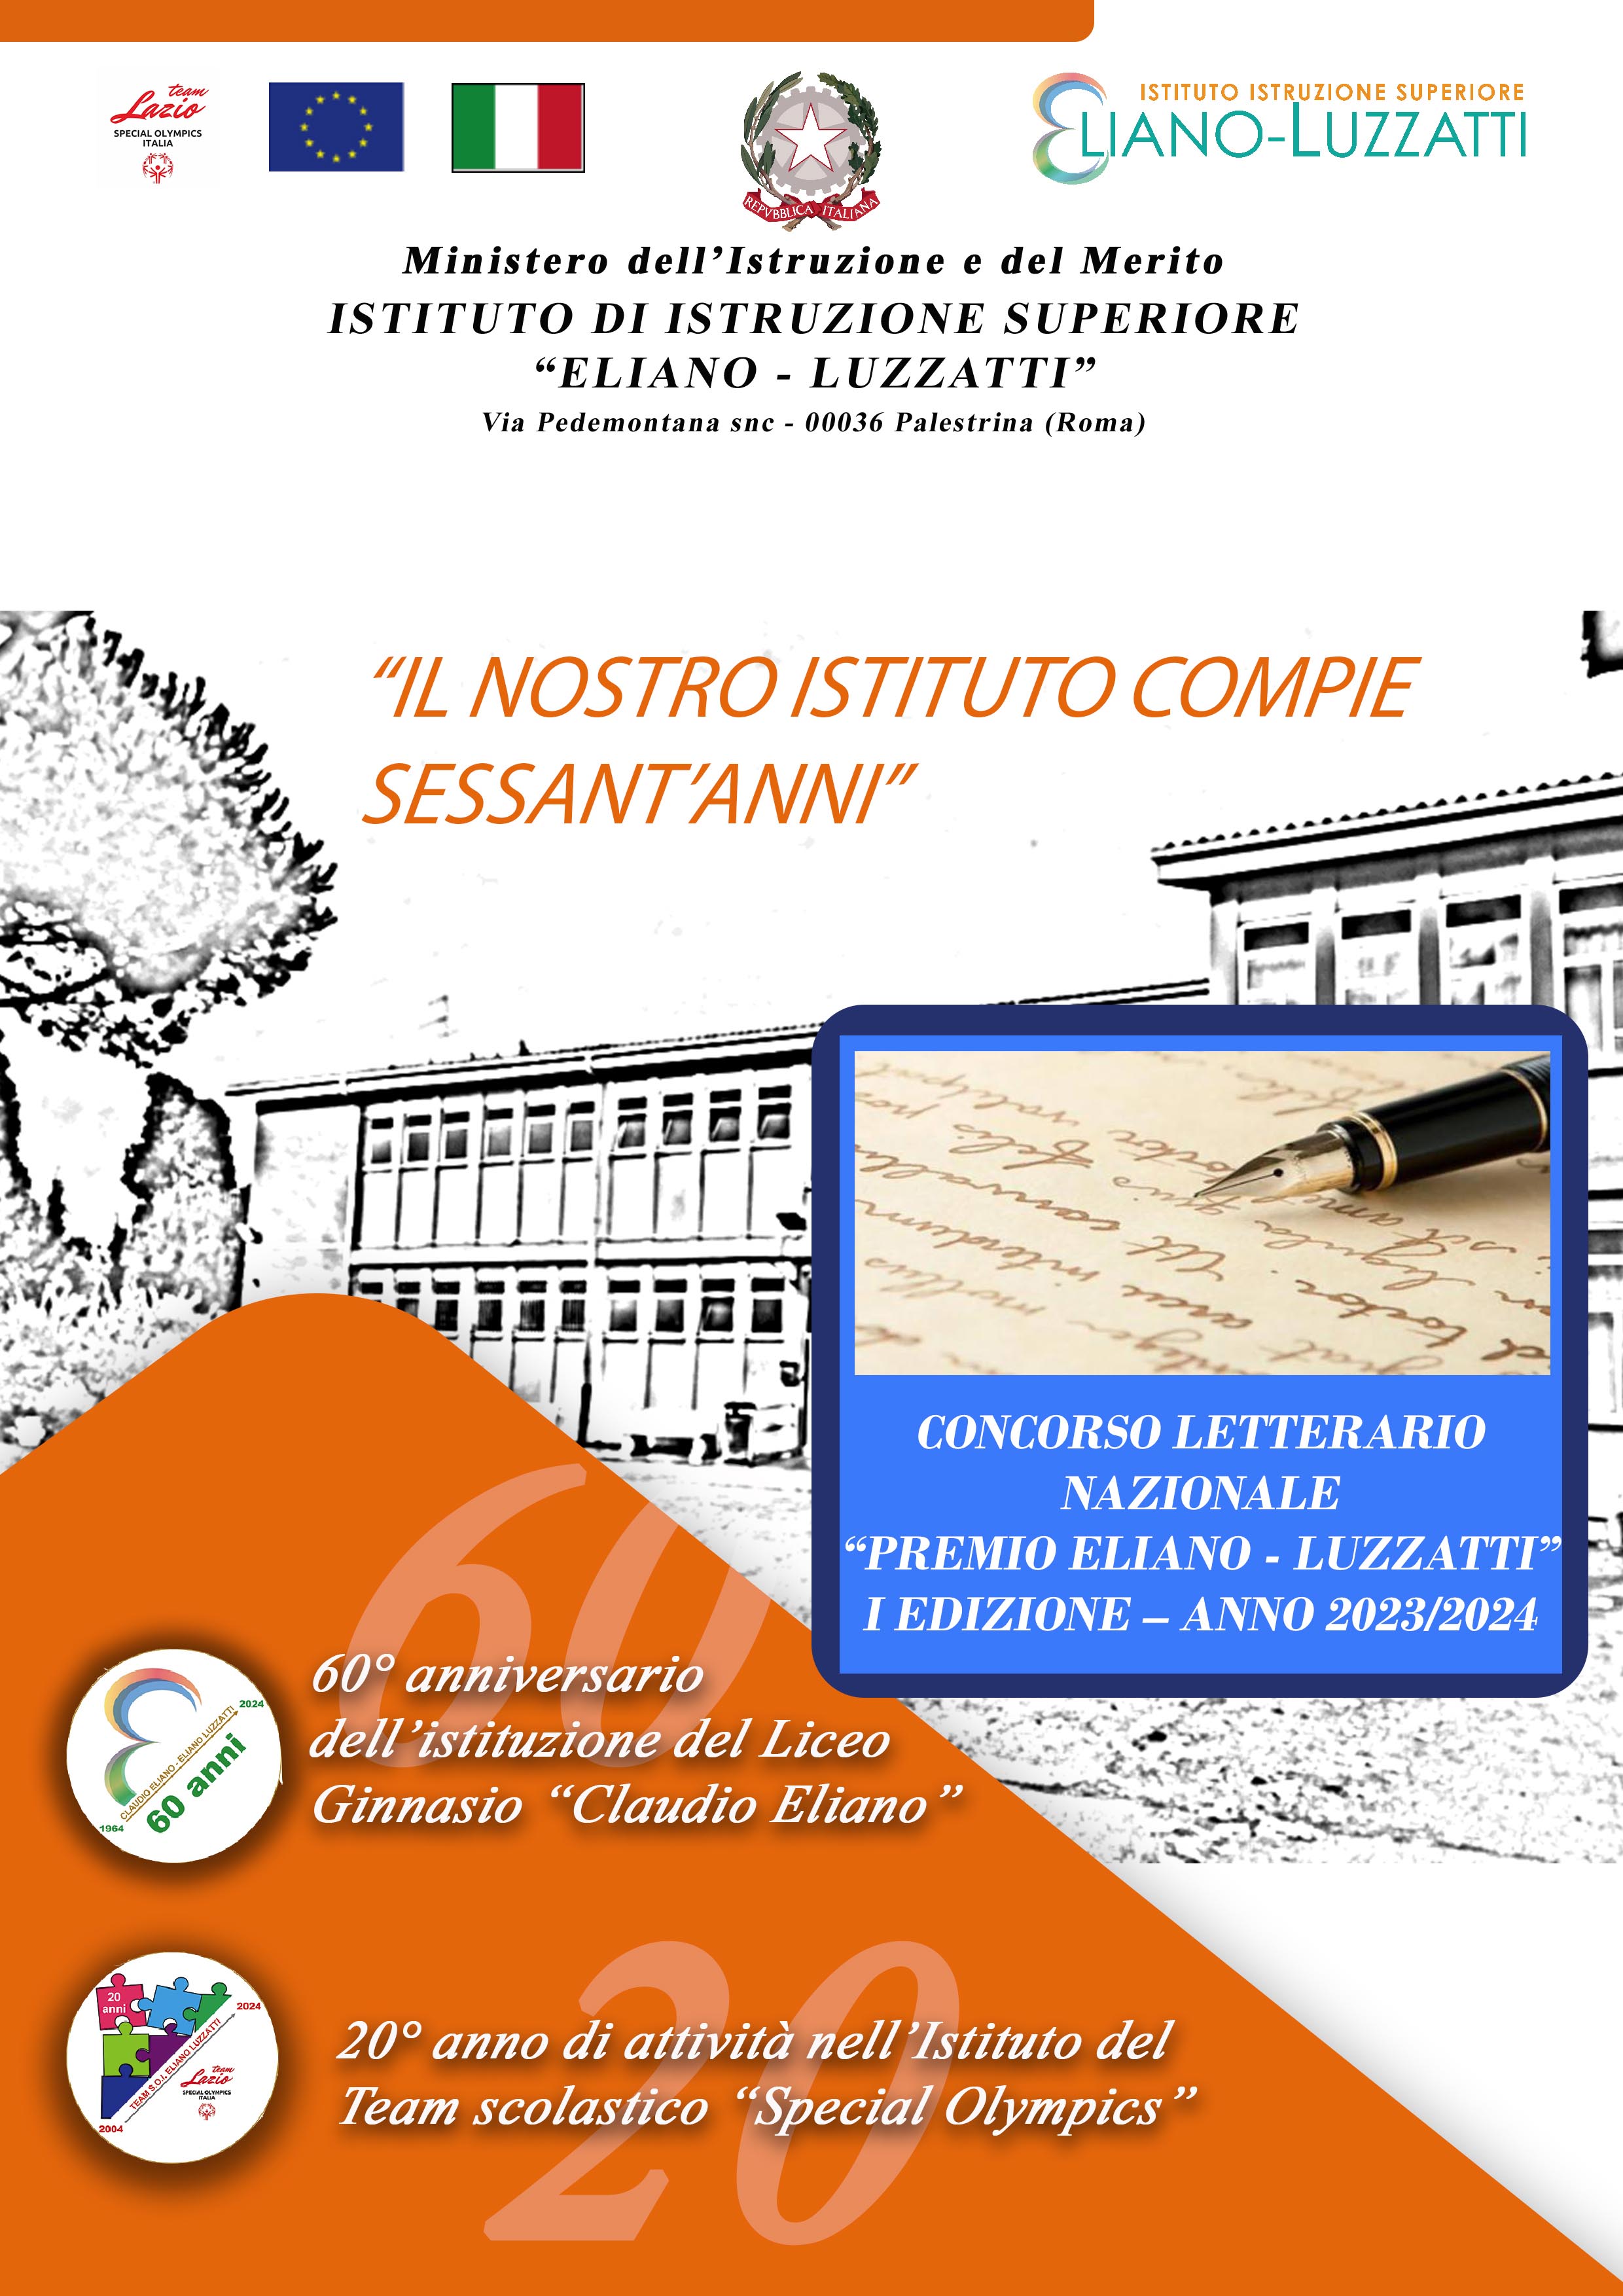 Concorso letterario nazionale "Premio Eliano Luzzatti"